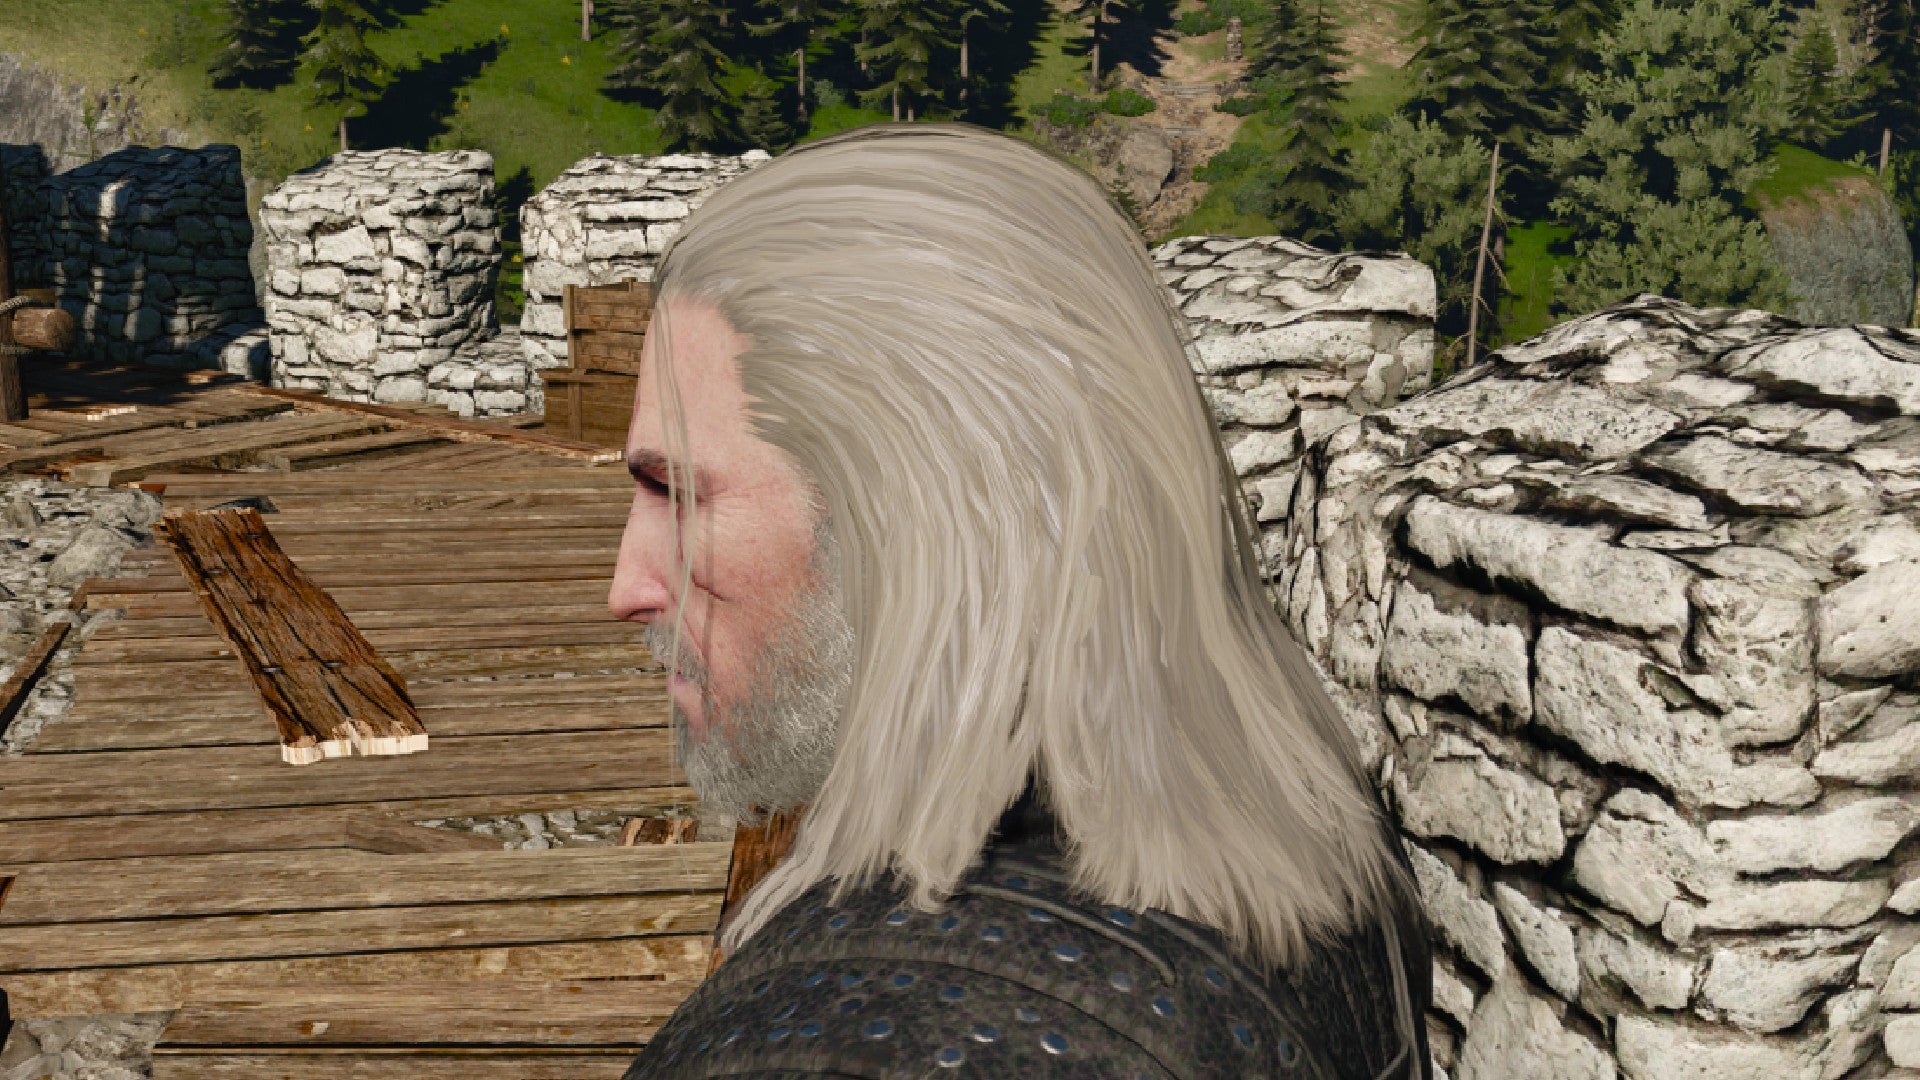 Captura de pantalla de Witcher 3 que muestra el corte de pelo largo y suelto de Geralt desde un lado.